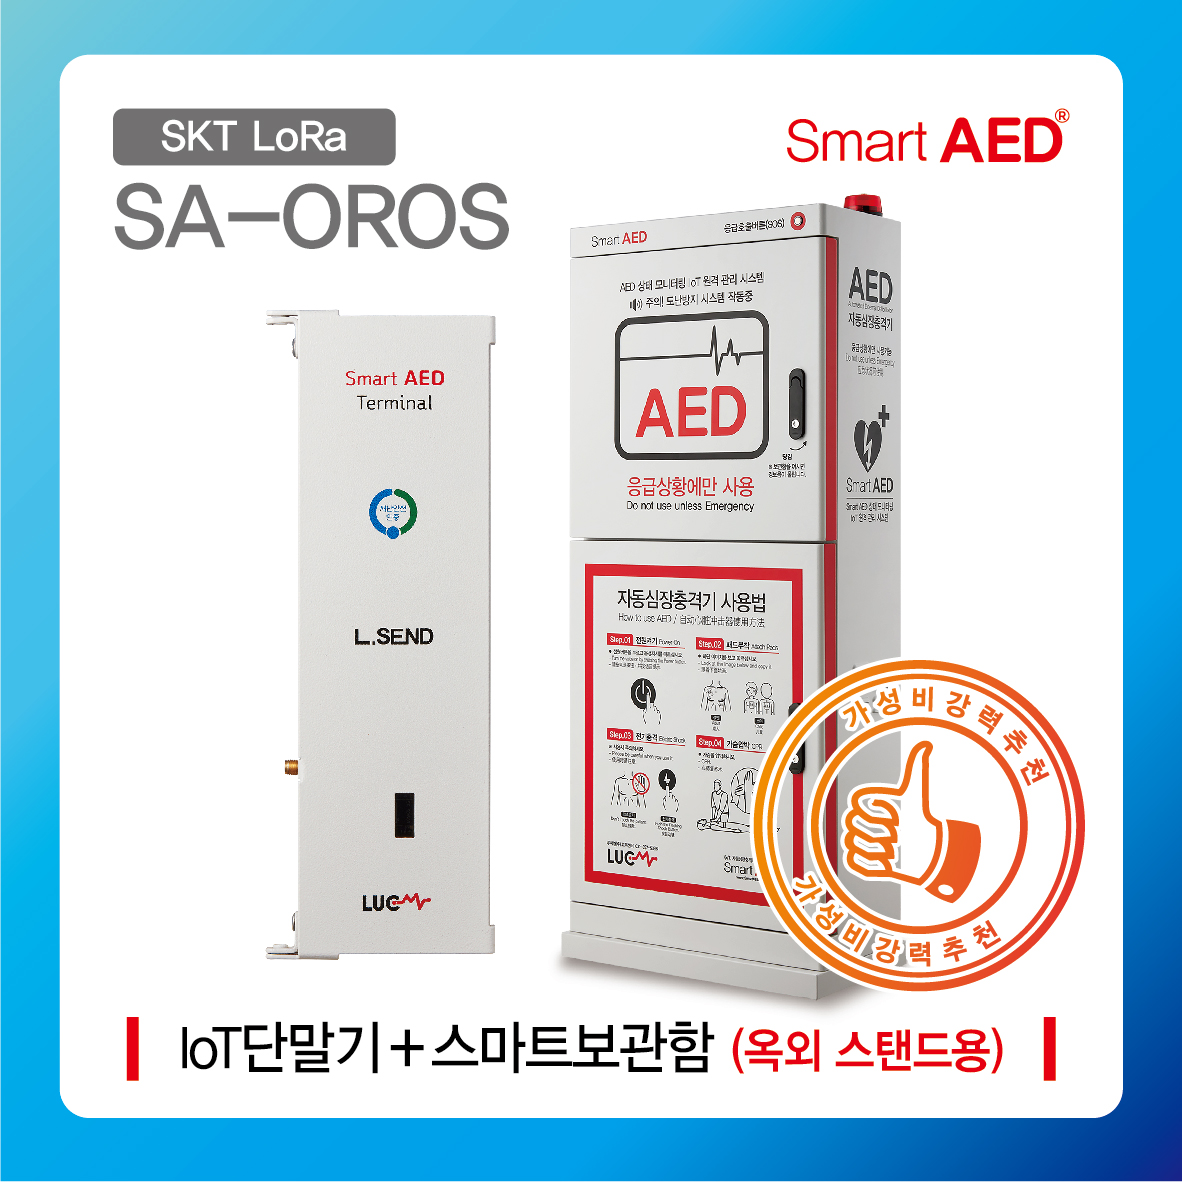 [ SA-OROS ] 스마트 AED 통합모니터링 장치 및 보관함 (옥외 스탠드형)